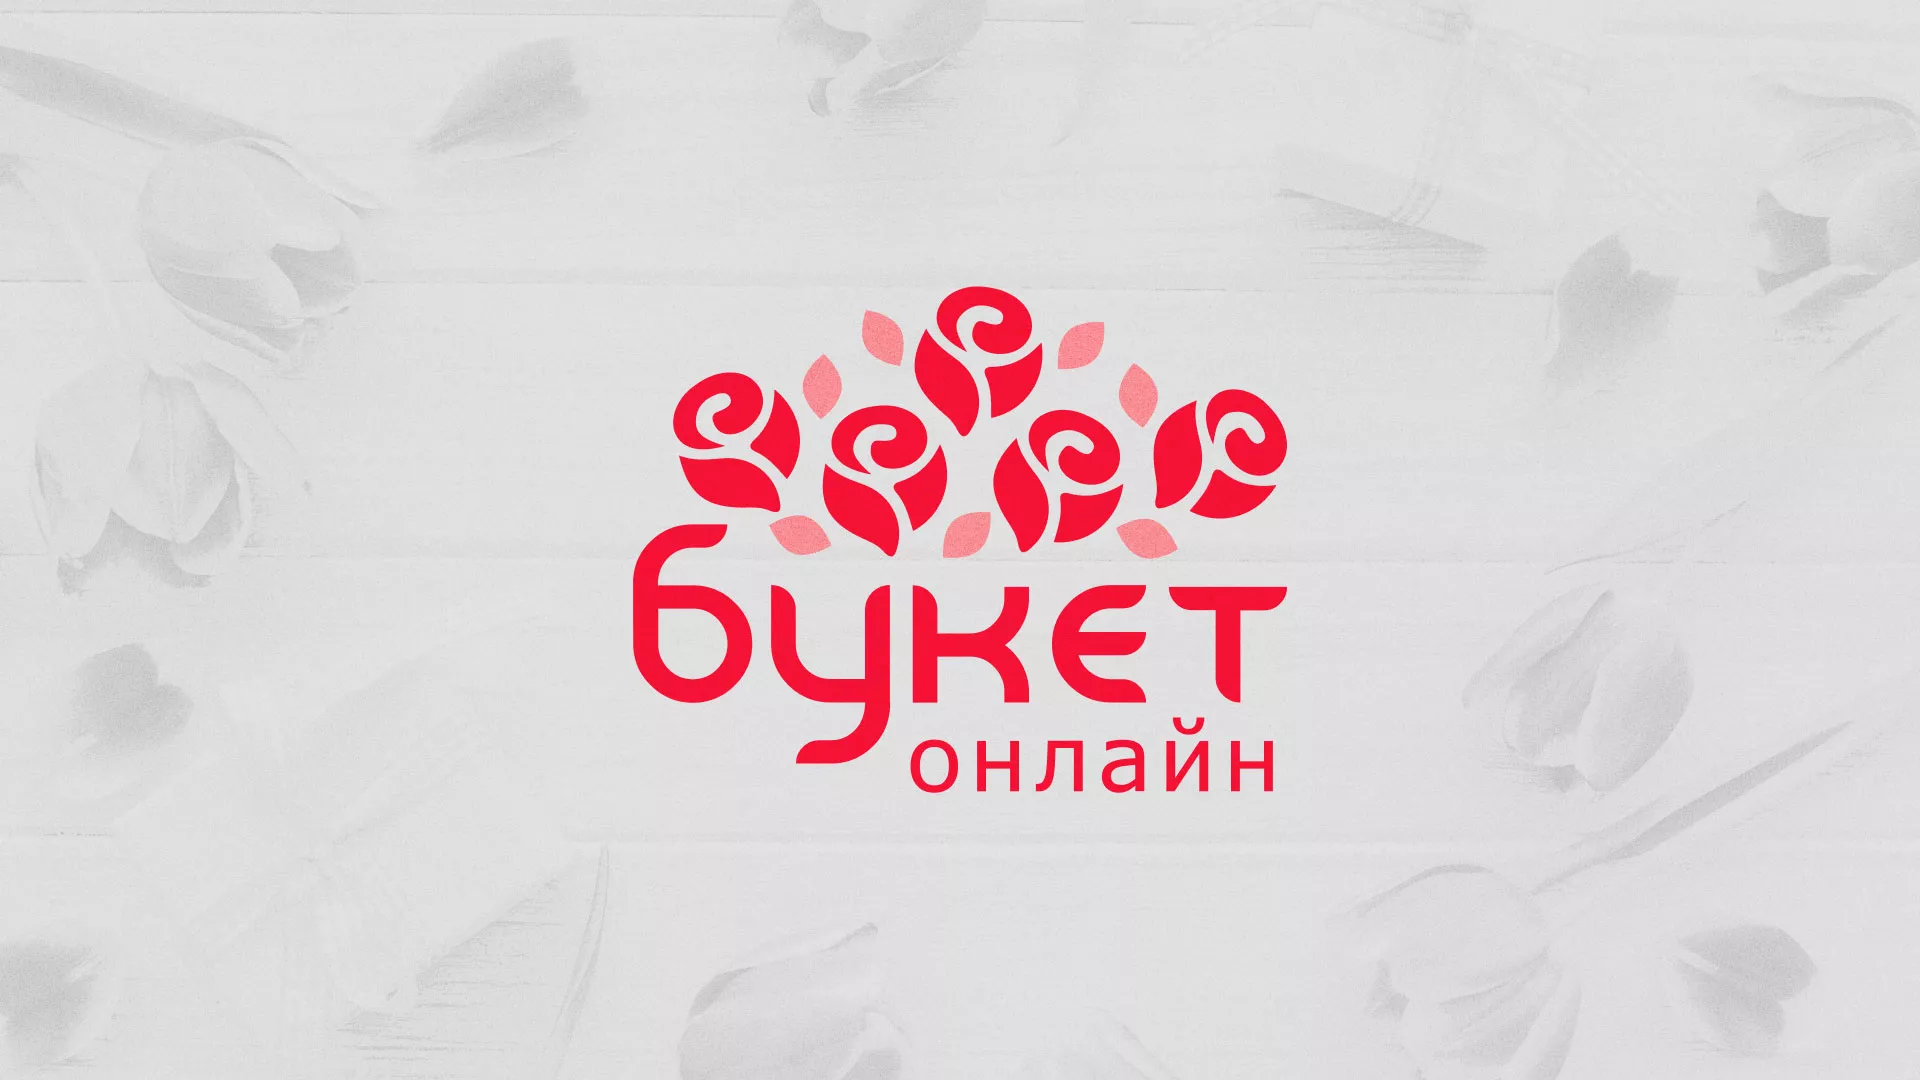 Создание интернет-магазина «Букет-онлайн» по цветам в Ногинске